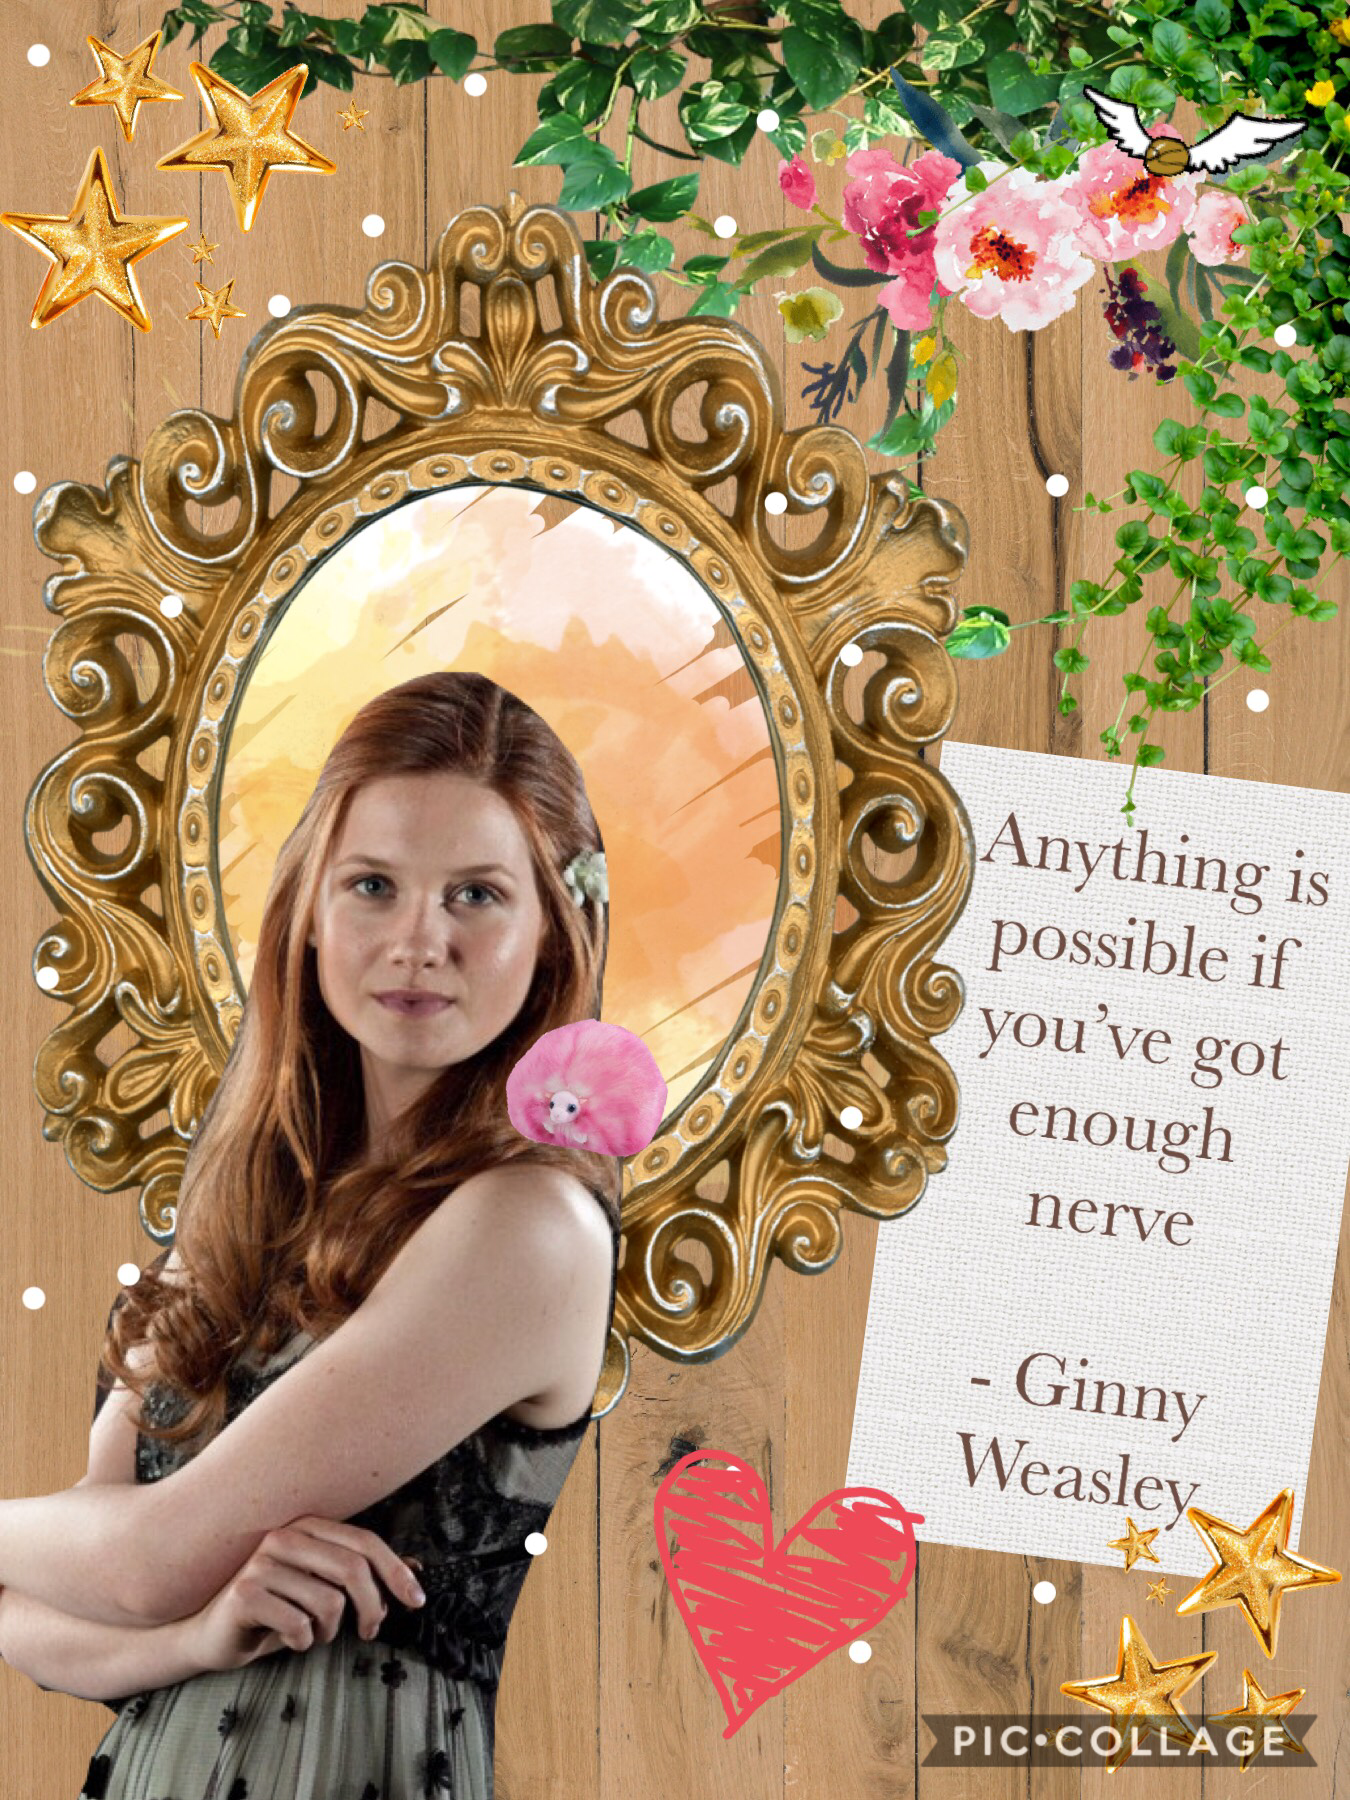 Ginny Weasley appreciation post 💕